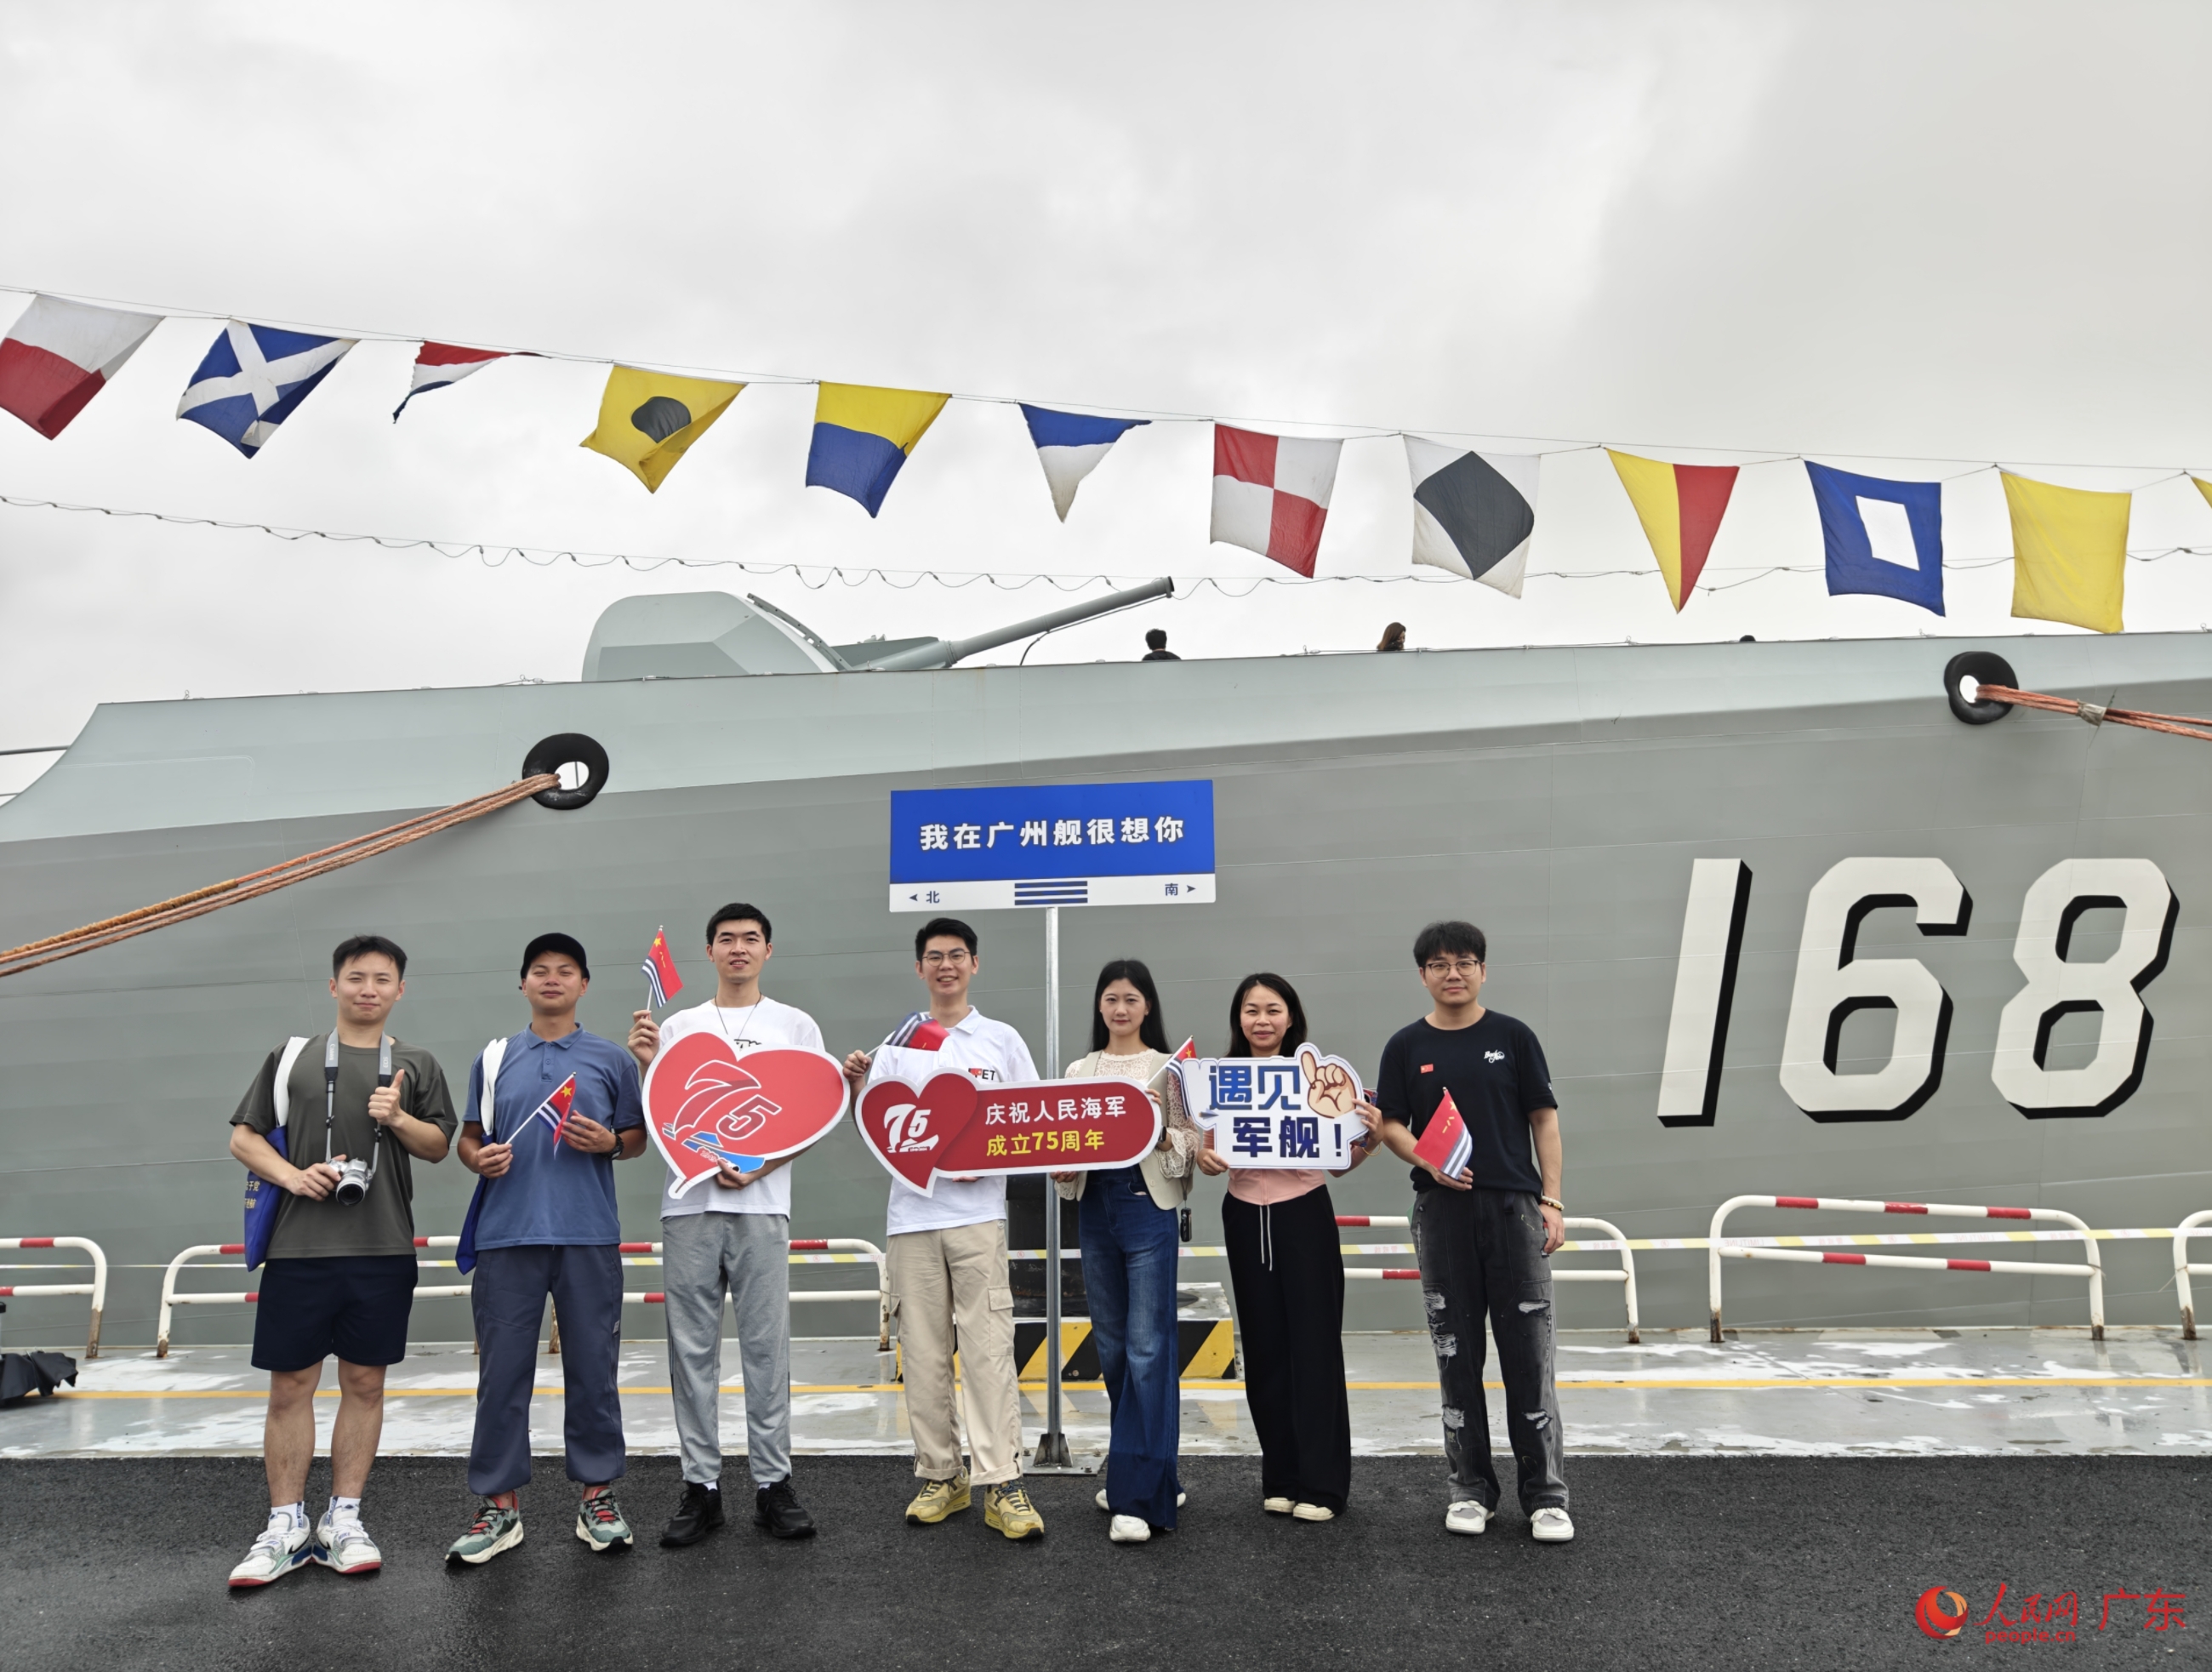 庆祝人民海军成立75周年双拥共建暨“广州舰回家乡”活动现场。人民网 王雅蝶摄